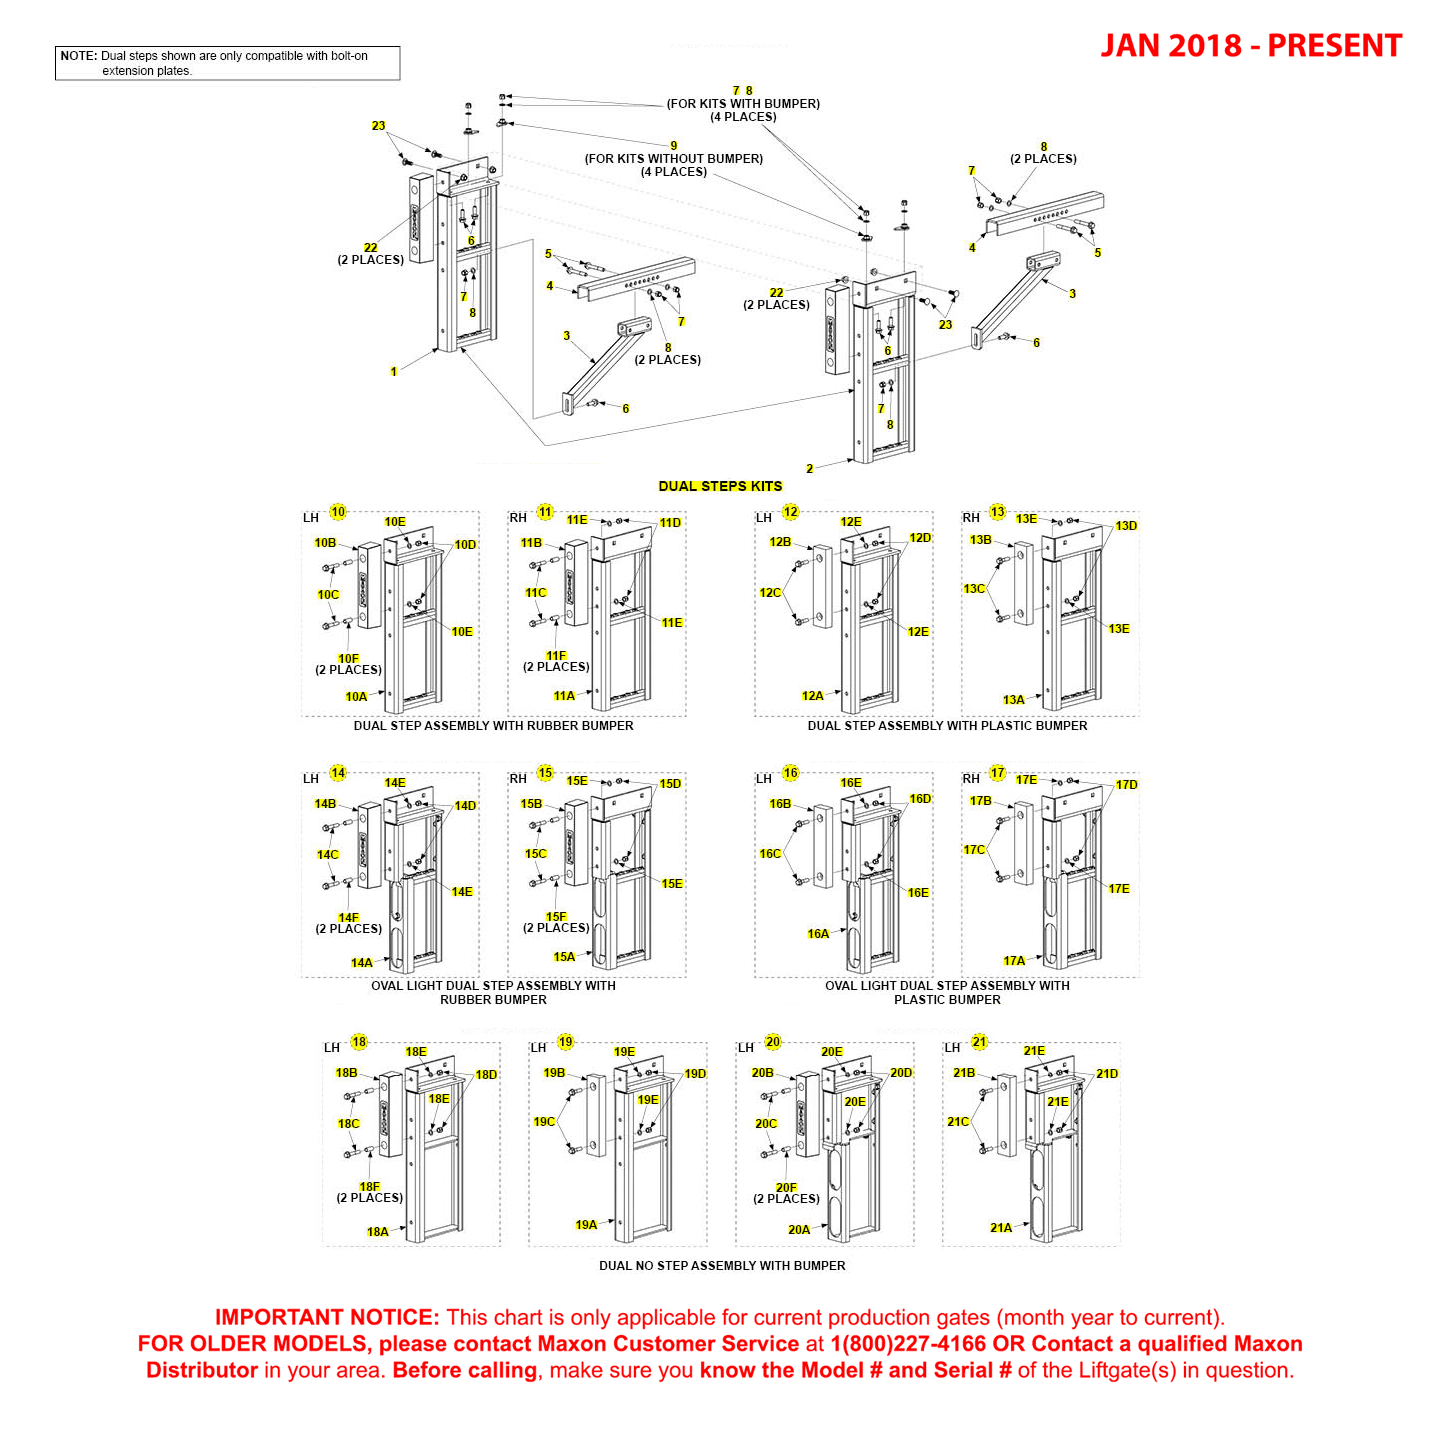 Maxon TE-25 And TE-30 (Jan 2018 - Present) Dual Step Kit Diagram